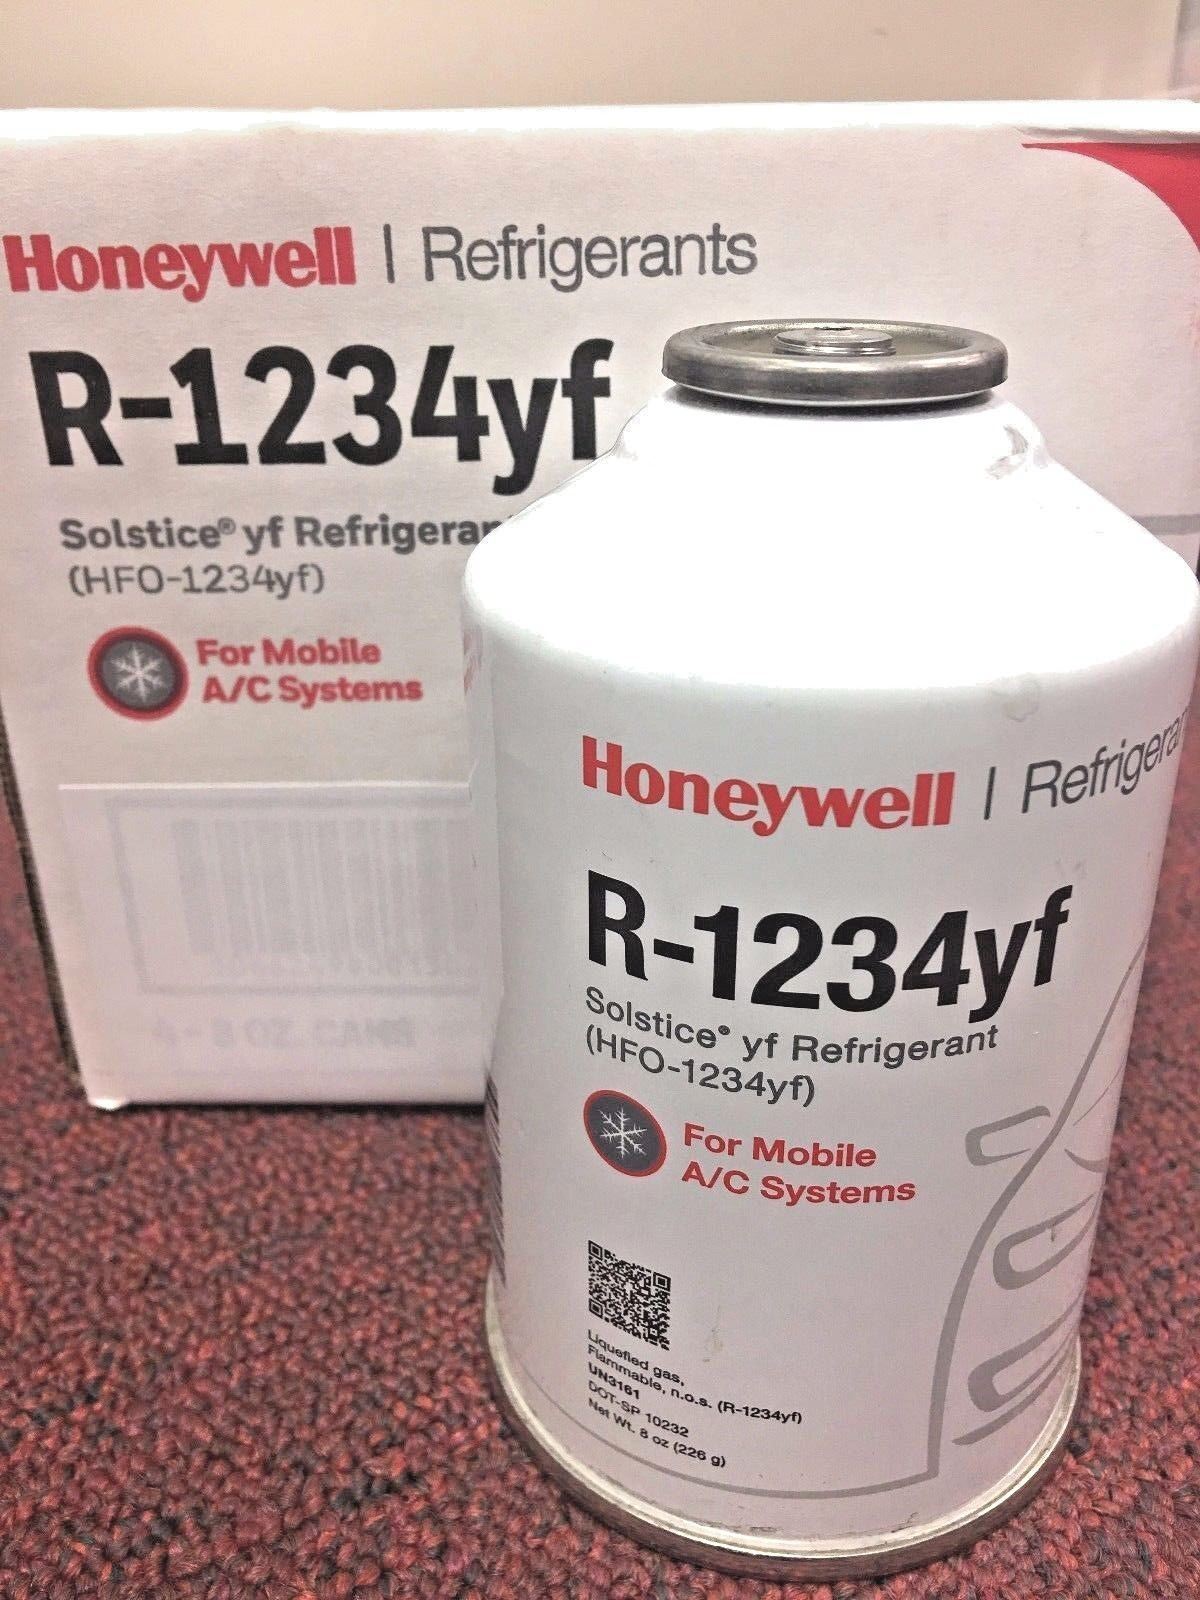 r1234yf Refrigerant Honeywell, 8 oz Solstice® yf Refrigerant (R-1234yf)